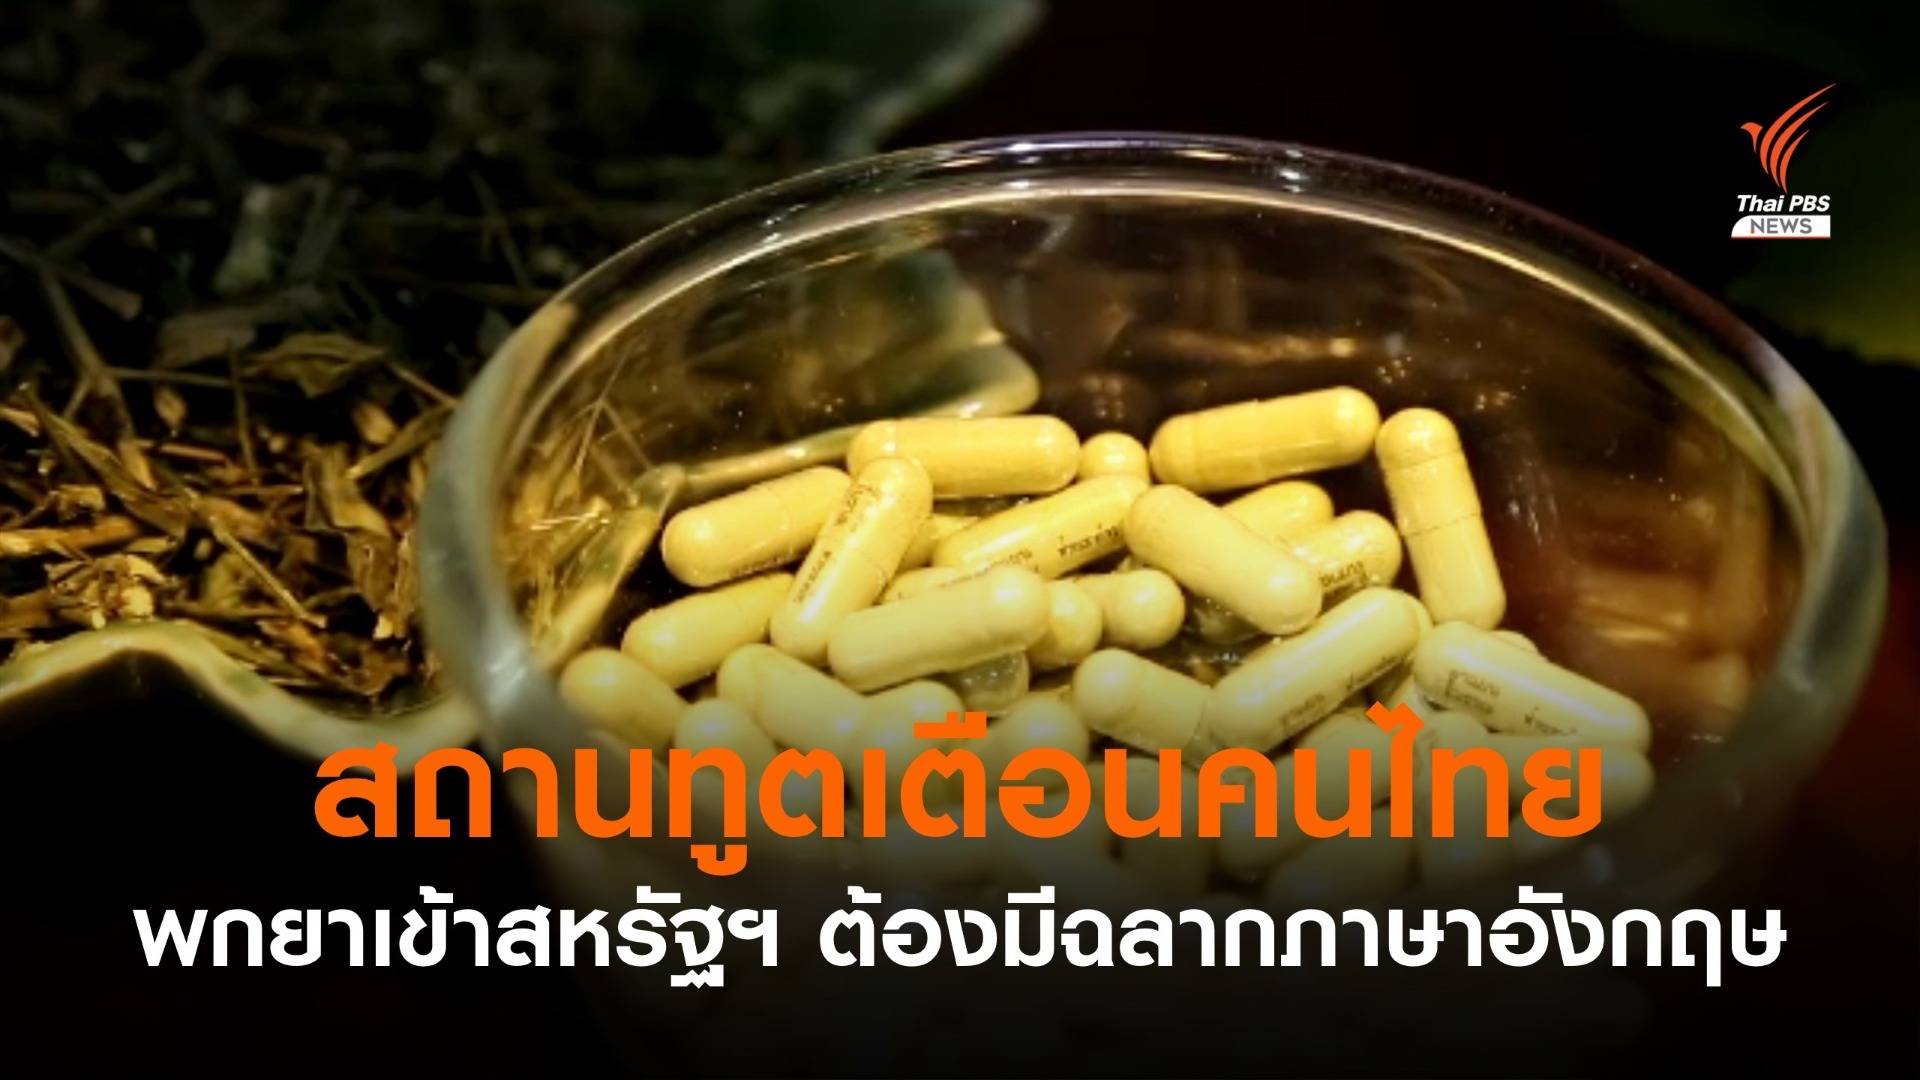 เตือนคนไทยเข้าสหรัฐฯ ห้ามพกสารสกัดกัญชา ส่วนยาสมุนไพรต้องมีฉลากภาษาอังกฤษชัดเจน